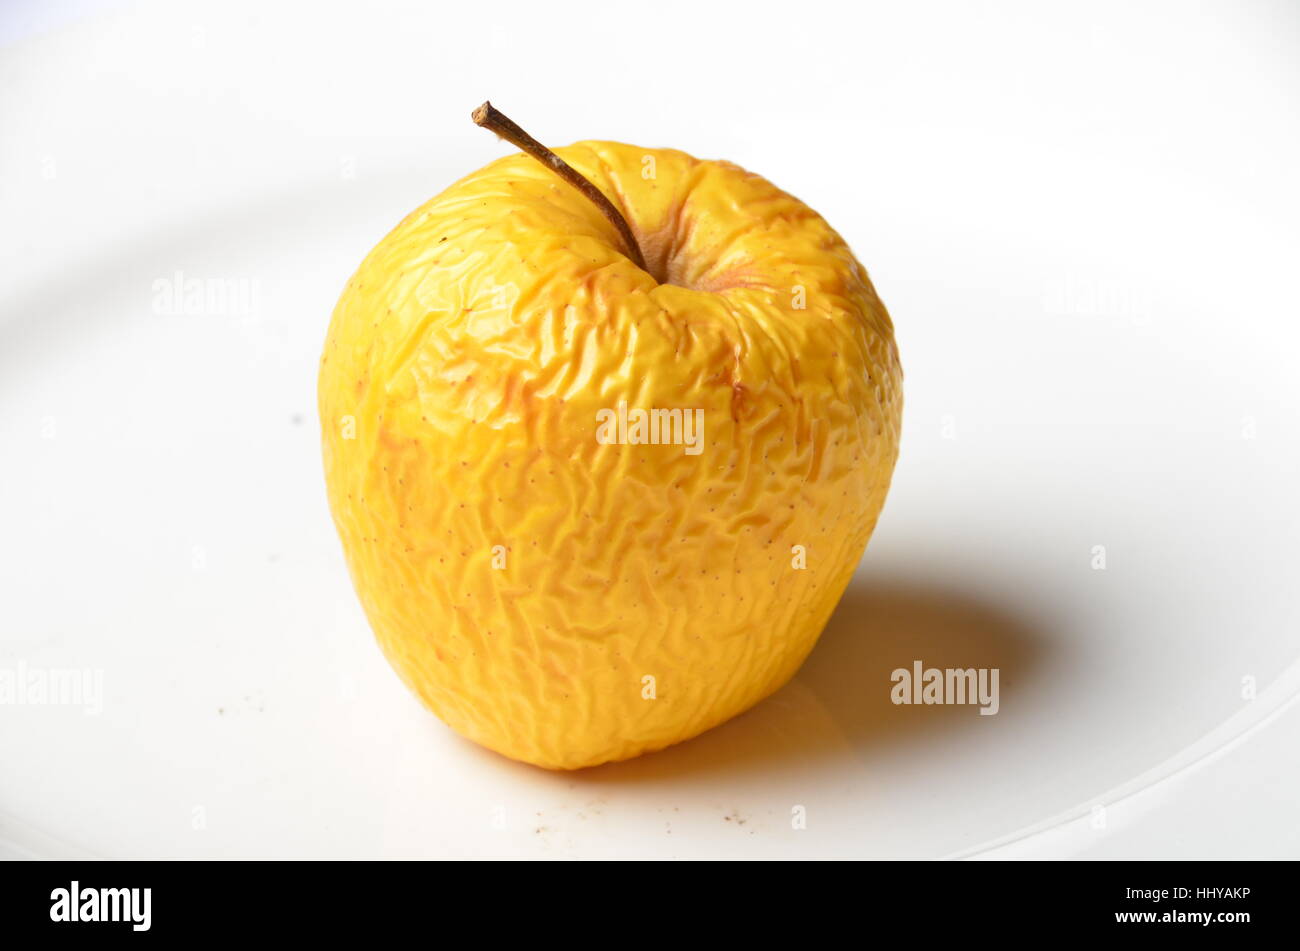 rotten old yellow apple Stock Photo